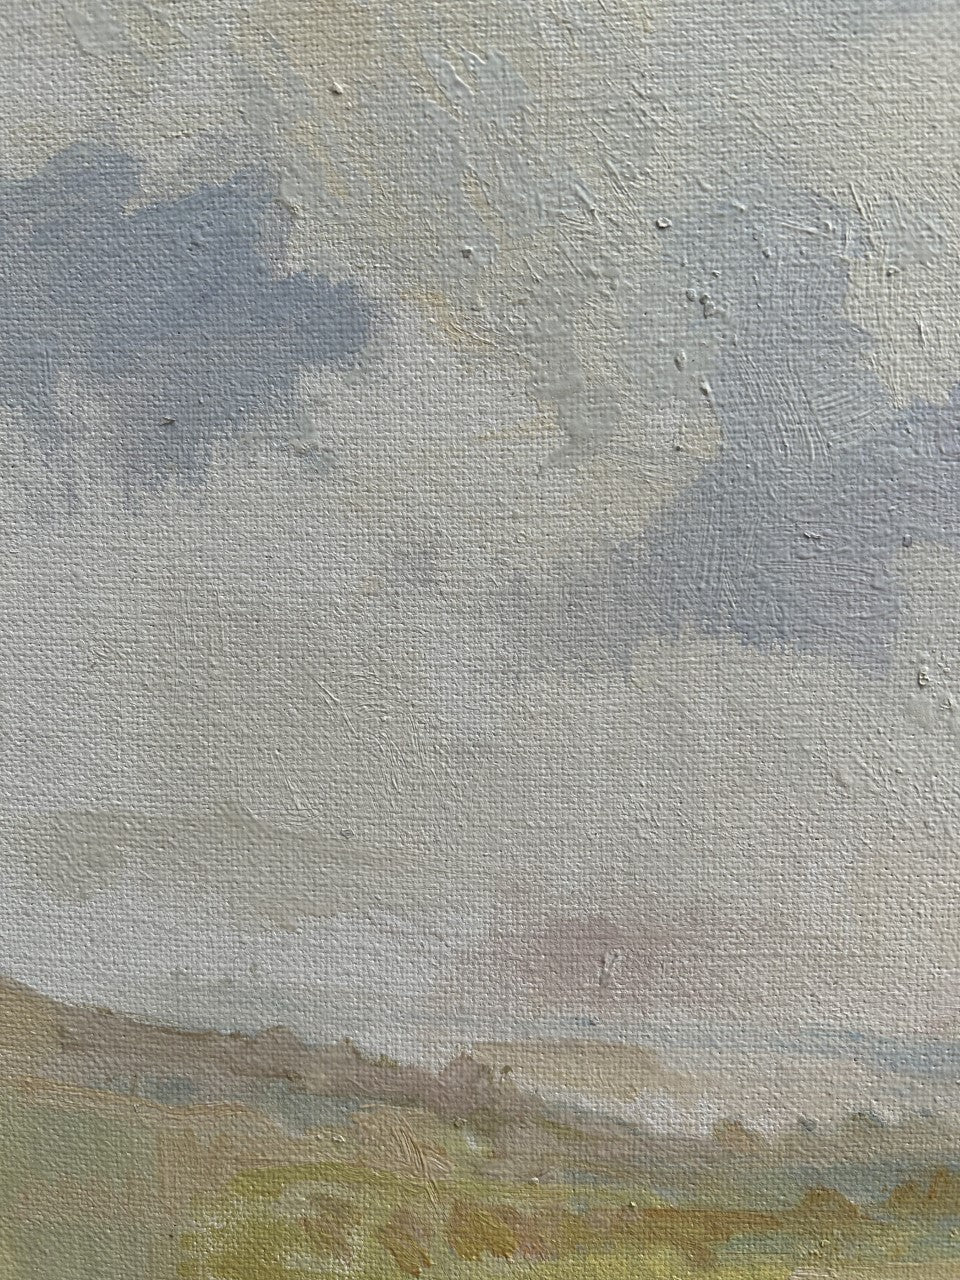 Gallipoli Plain by Chet Kalm 1925 - 2017 Oil on Canvas